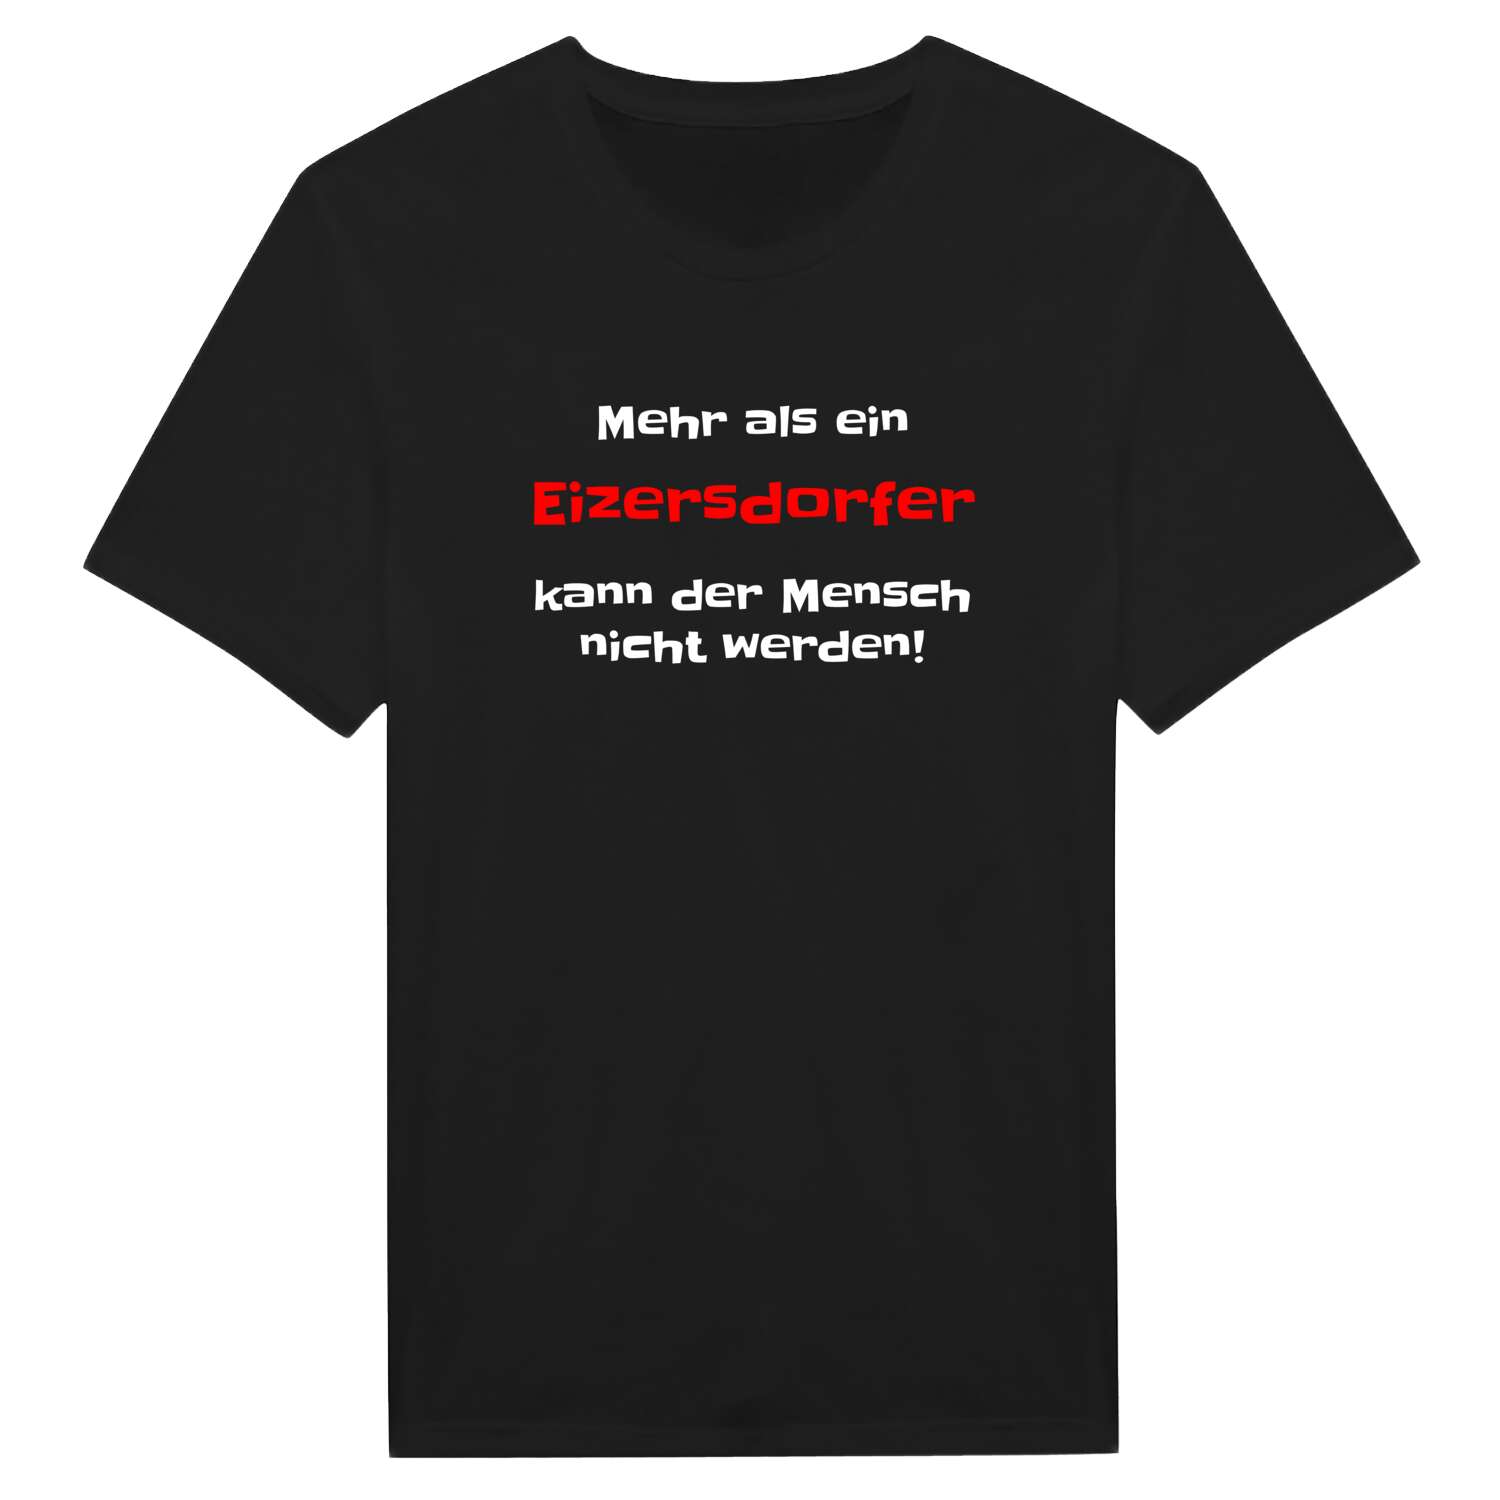 Eizersdorf T-Shirt »Mehr als ein«